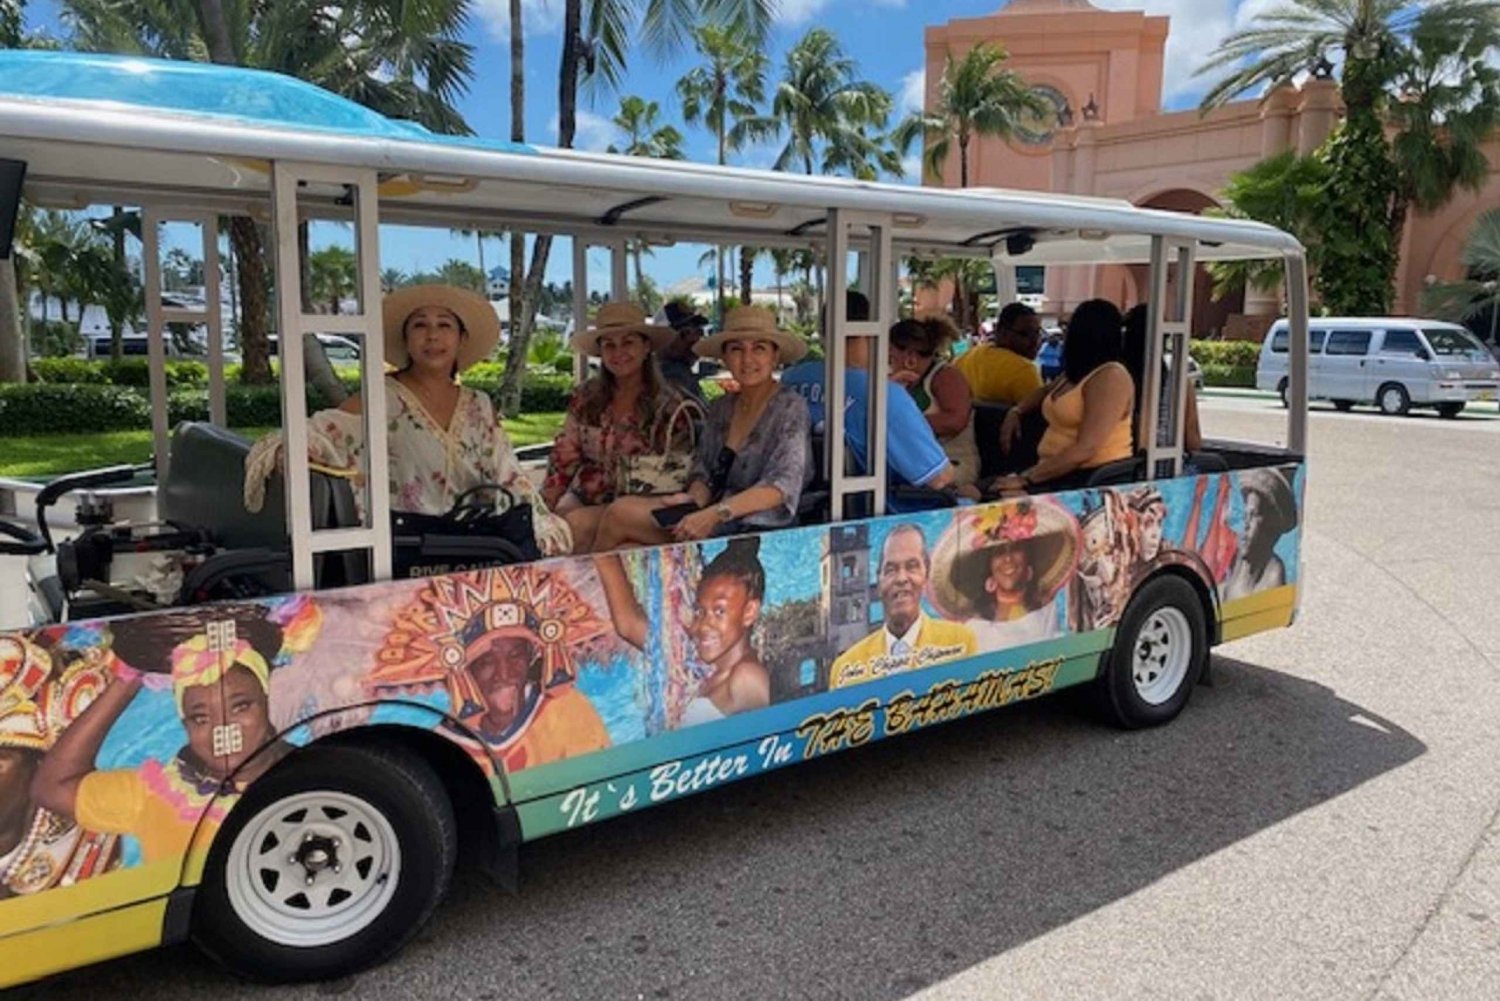 Nassau: Rundtur i Bahamas kultur med elektrisk spårvagn och vatten